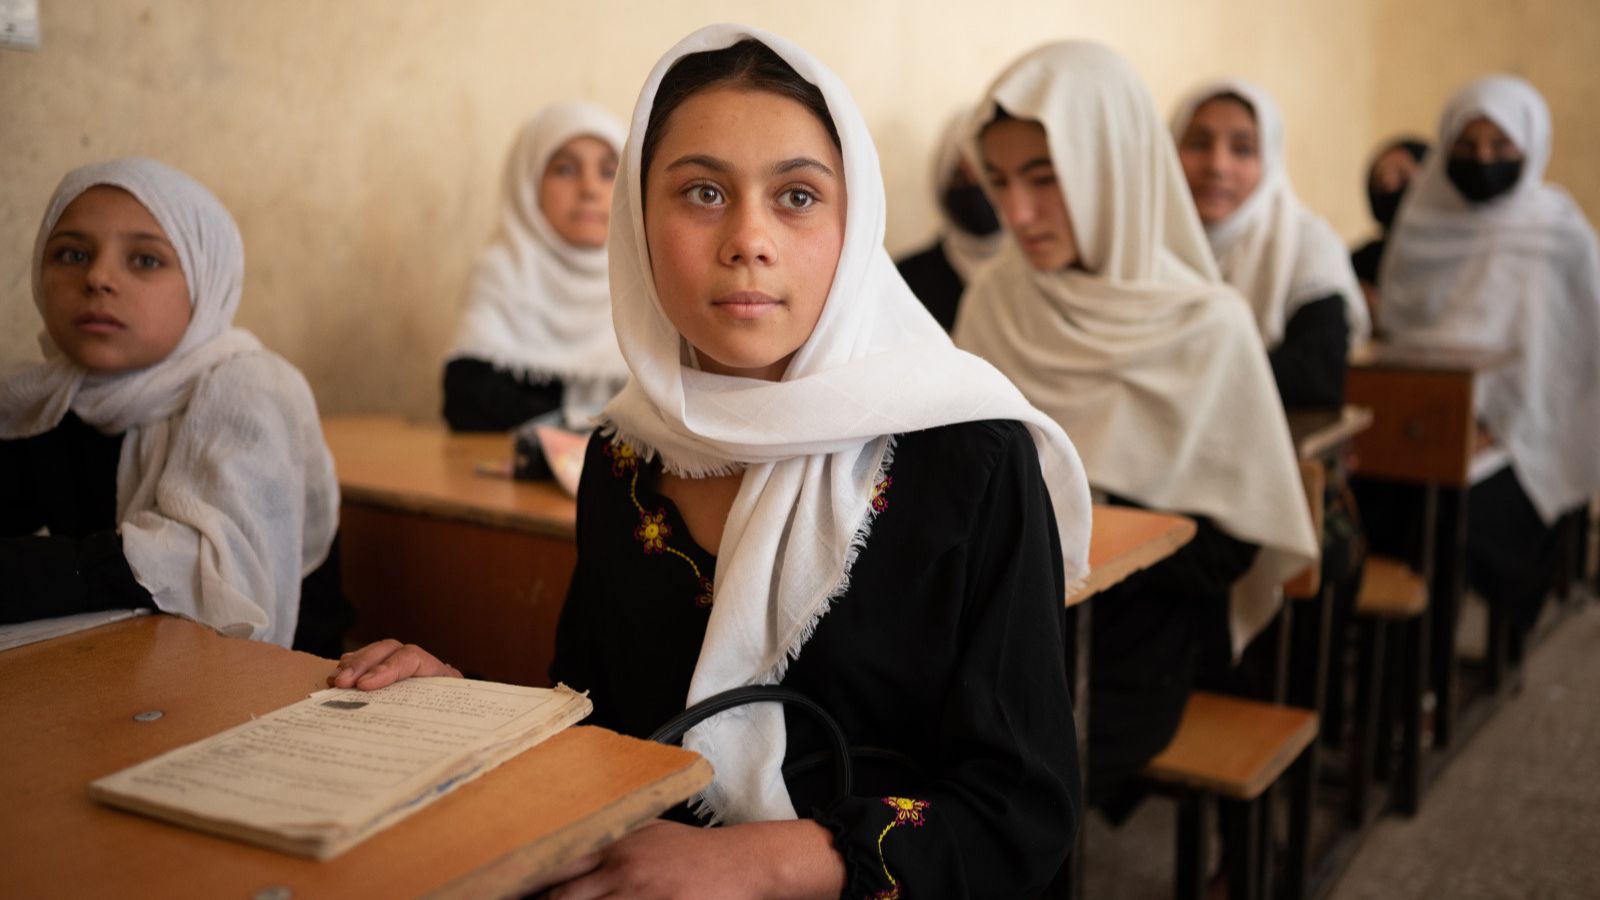 Afghan girls wearing white head scarves sit at school desks